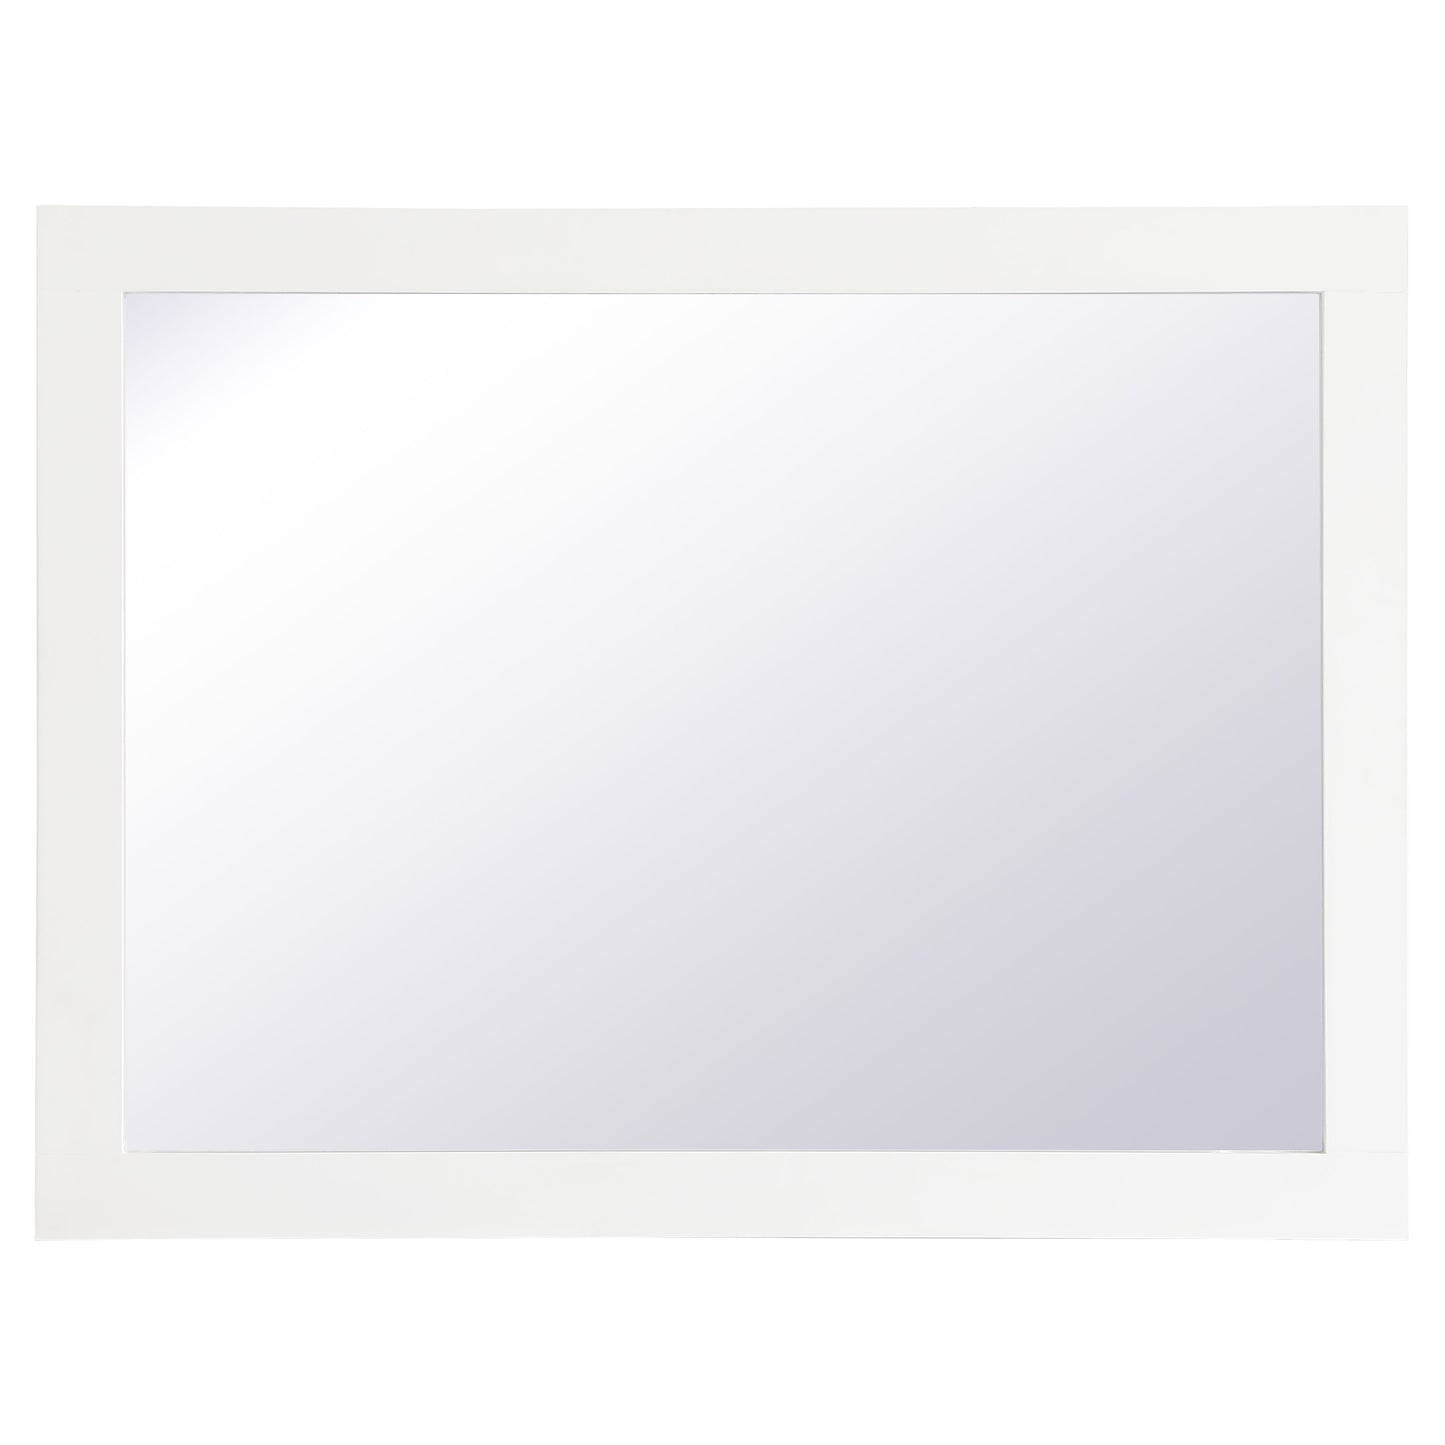 VM22432WH Aqua 24" x 32" Framed Rectangular Mirror in White